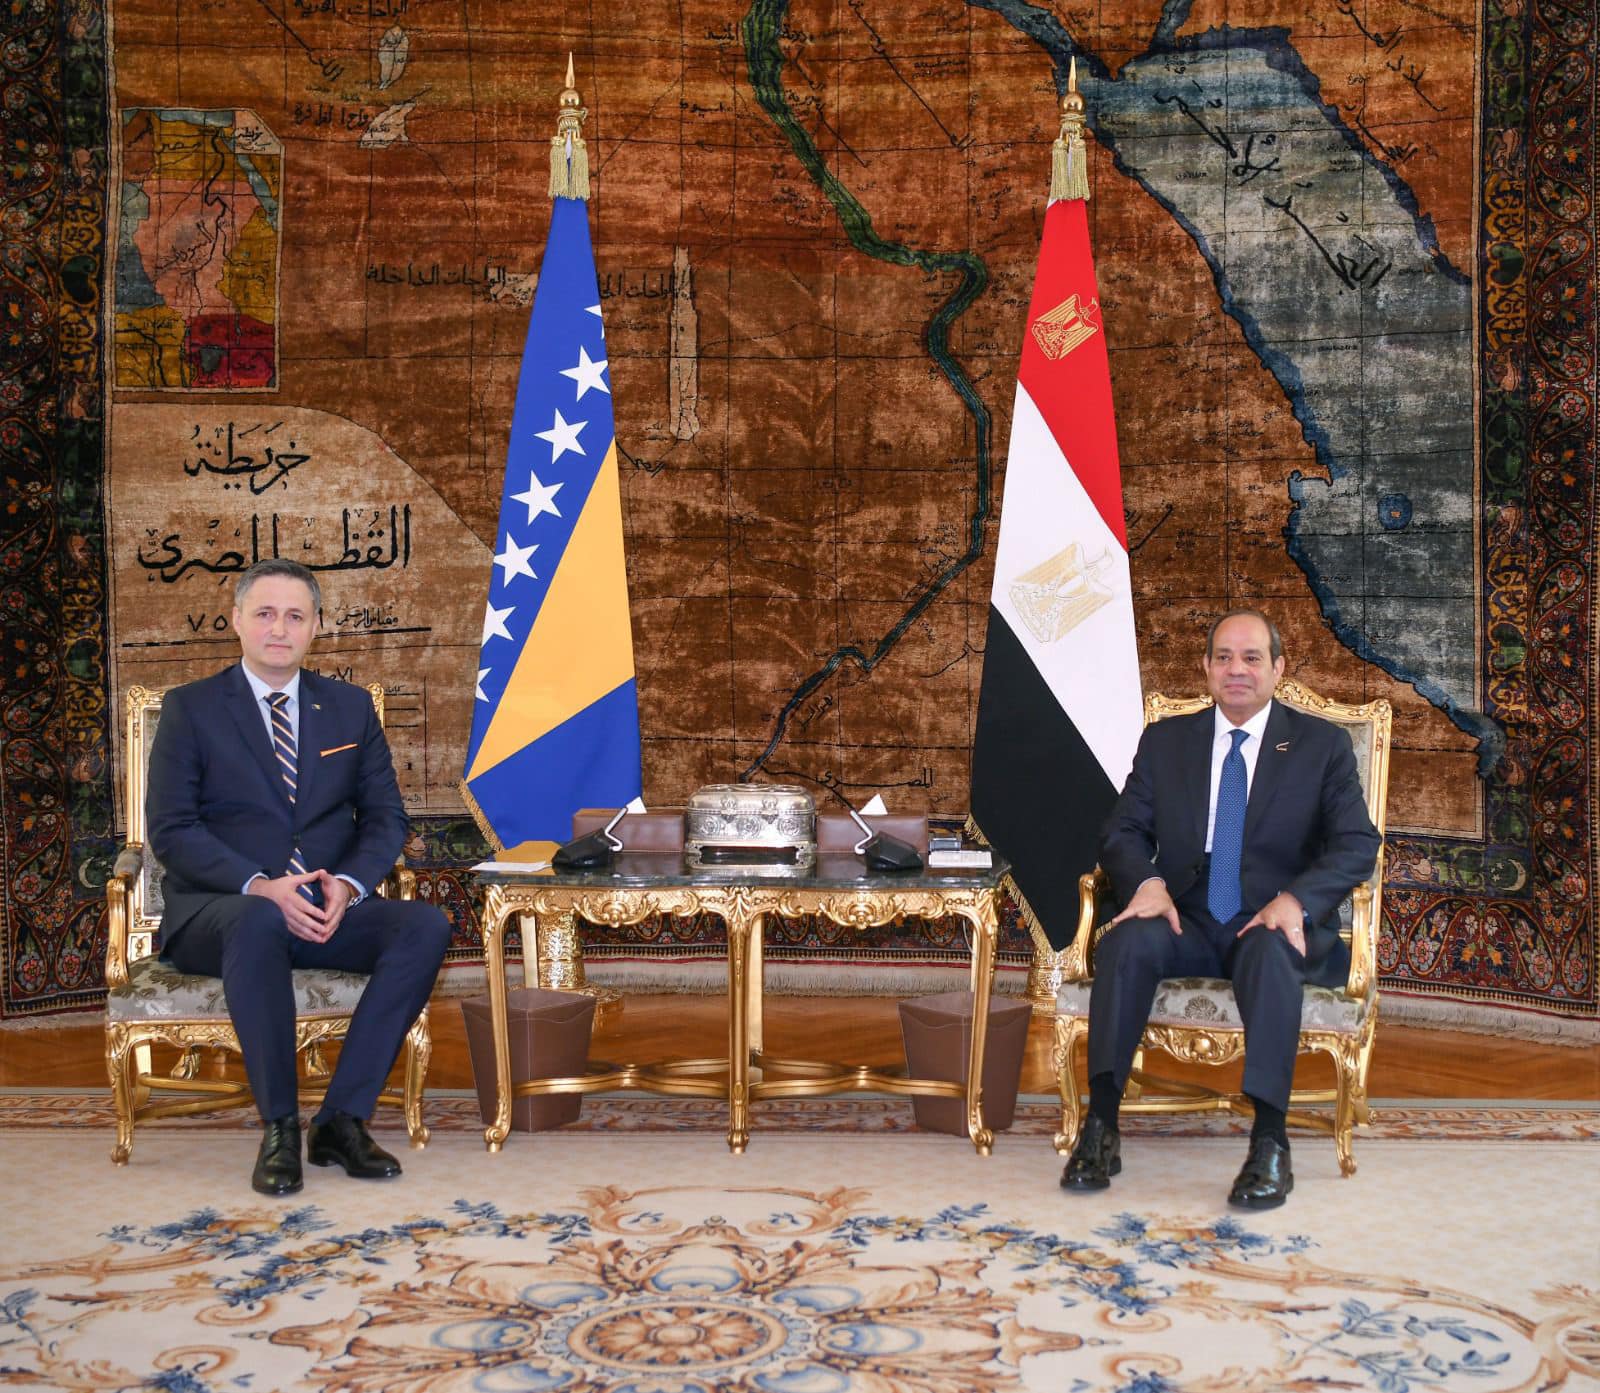 كلمة الرئيس السيسى : مباحثات مهمة عكست رغبة مشتركة في تعزيز العلاقات الثنائية مع البوسنة